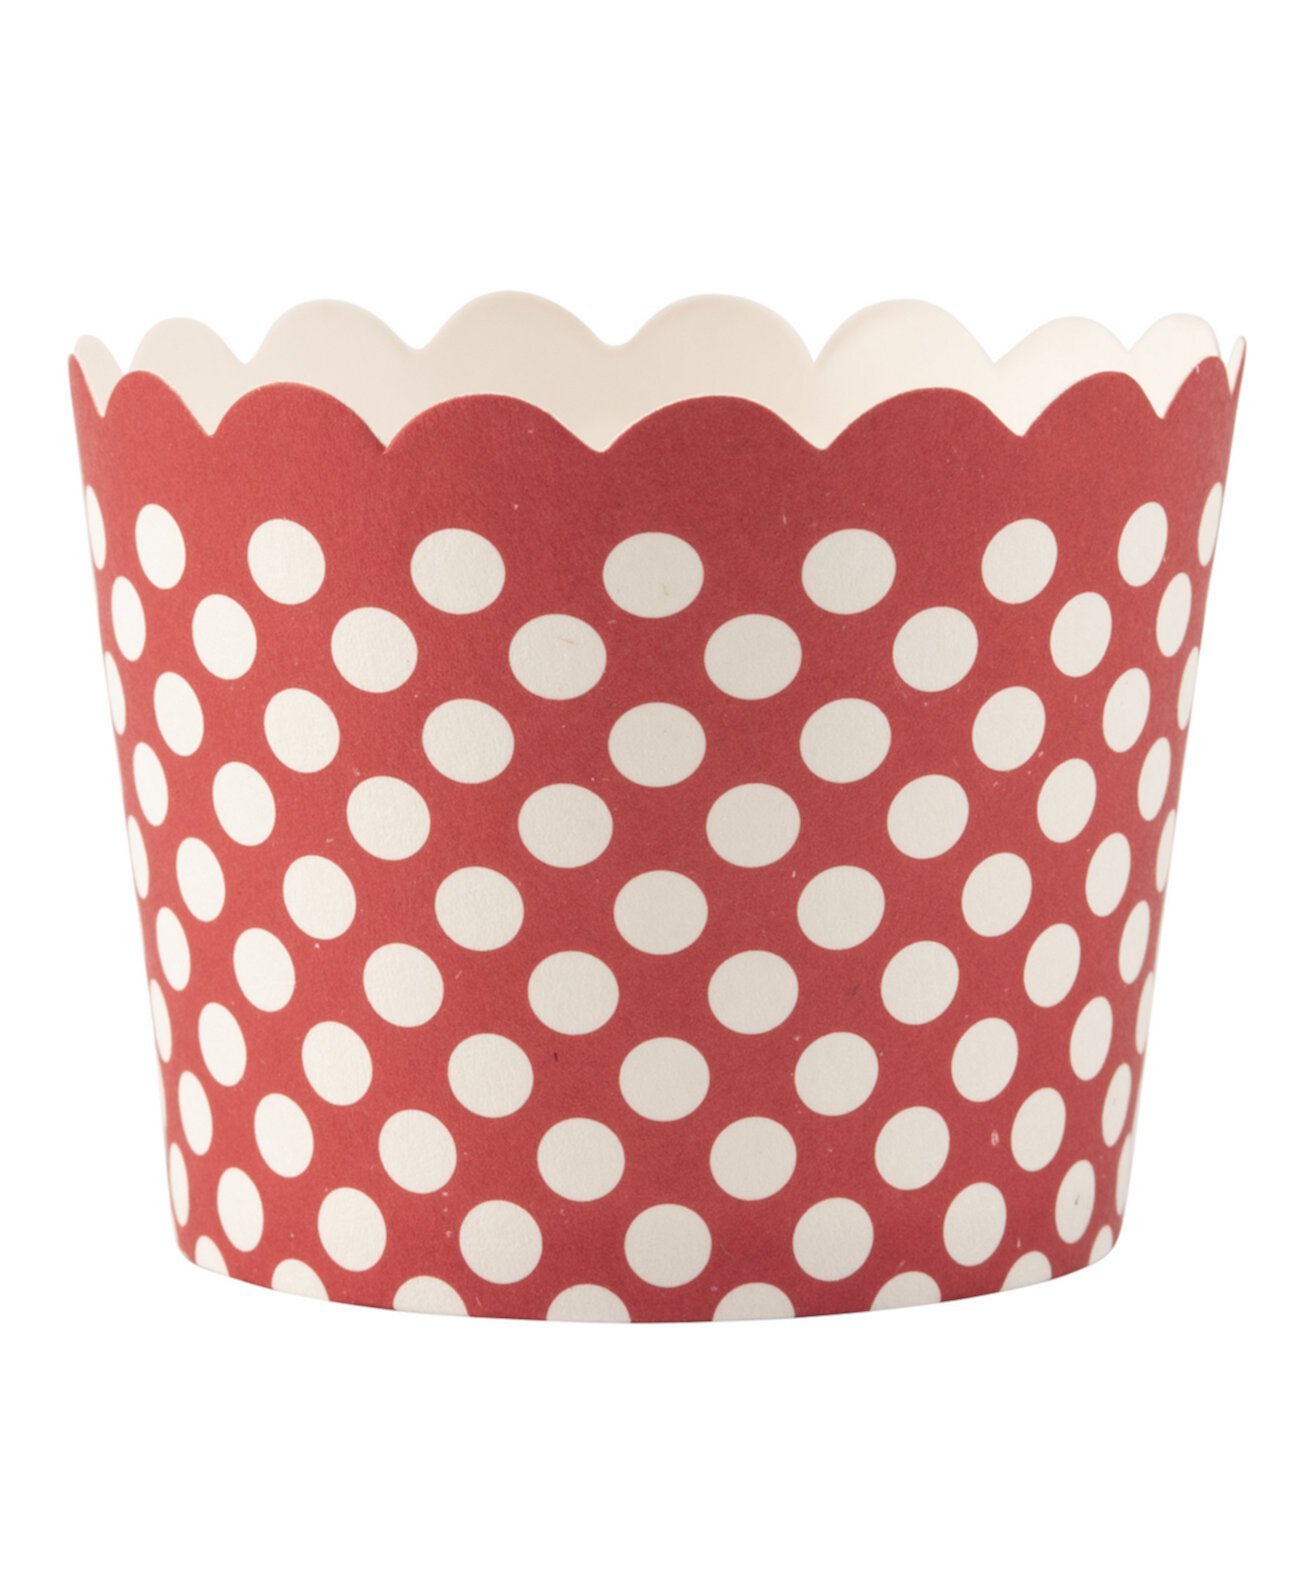 Маленькая чашка Dot Cup, 50 шт. В упаковке Simply Baked